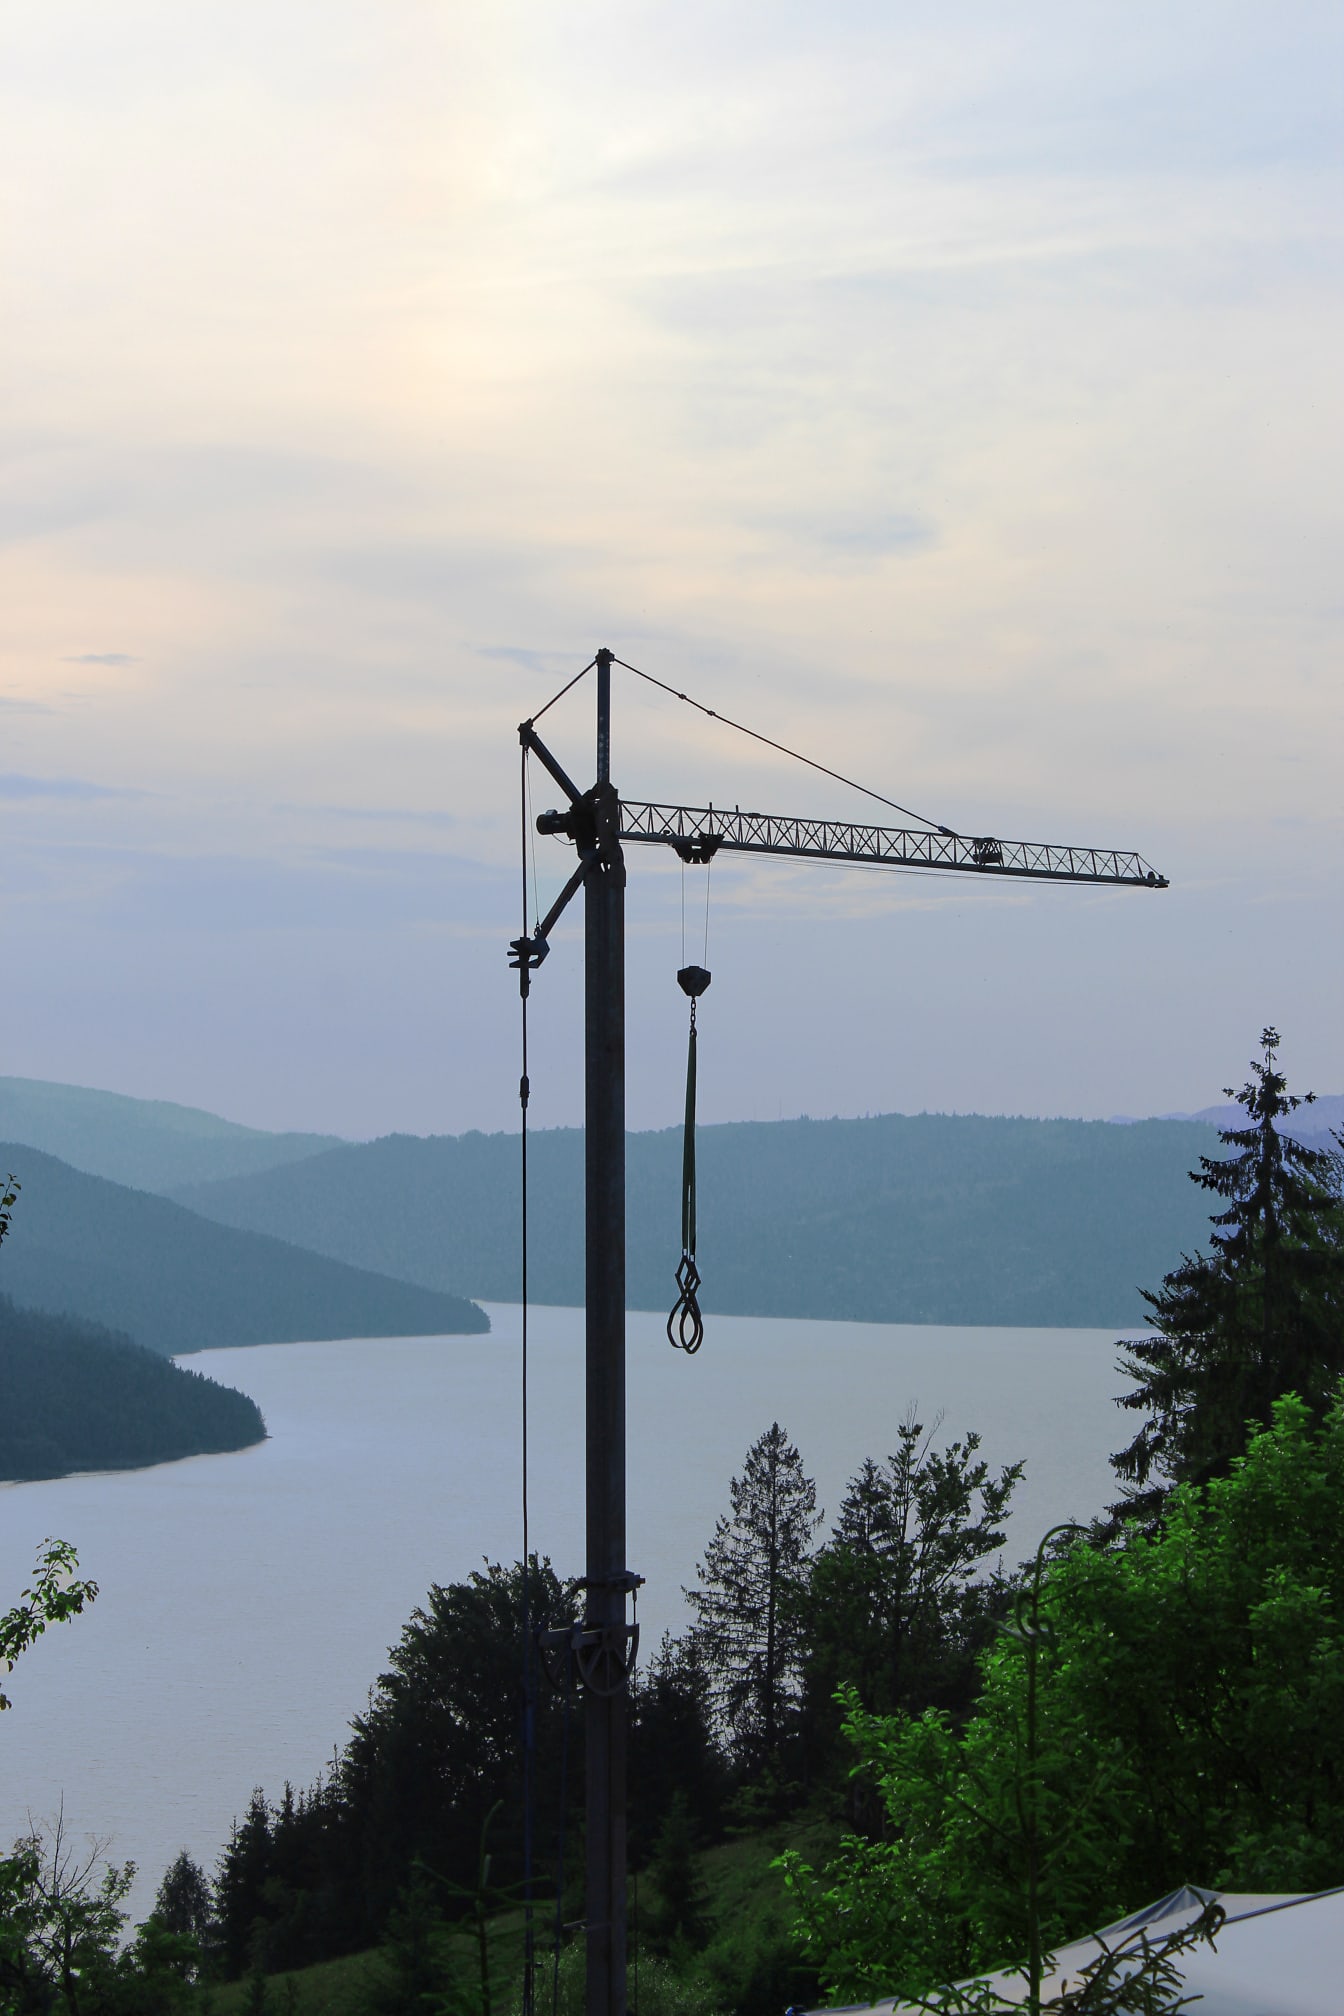 Grúa industrial alta en montañas junto al lago